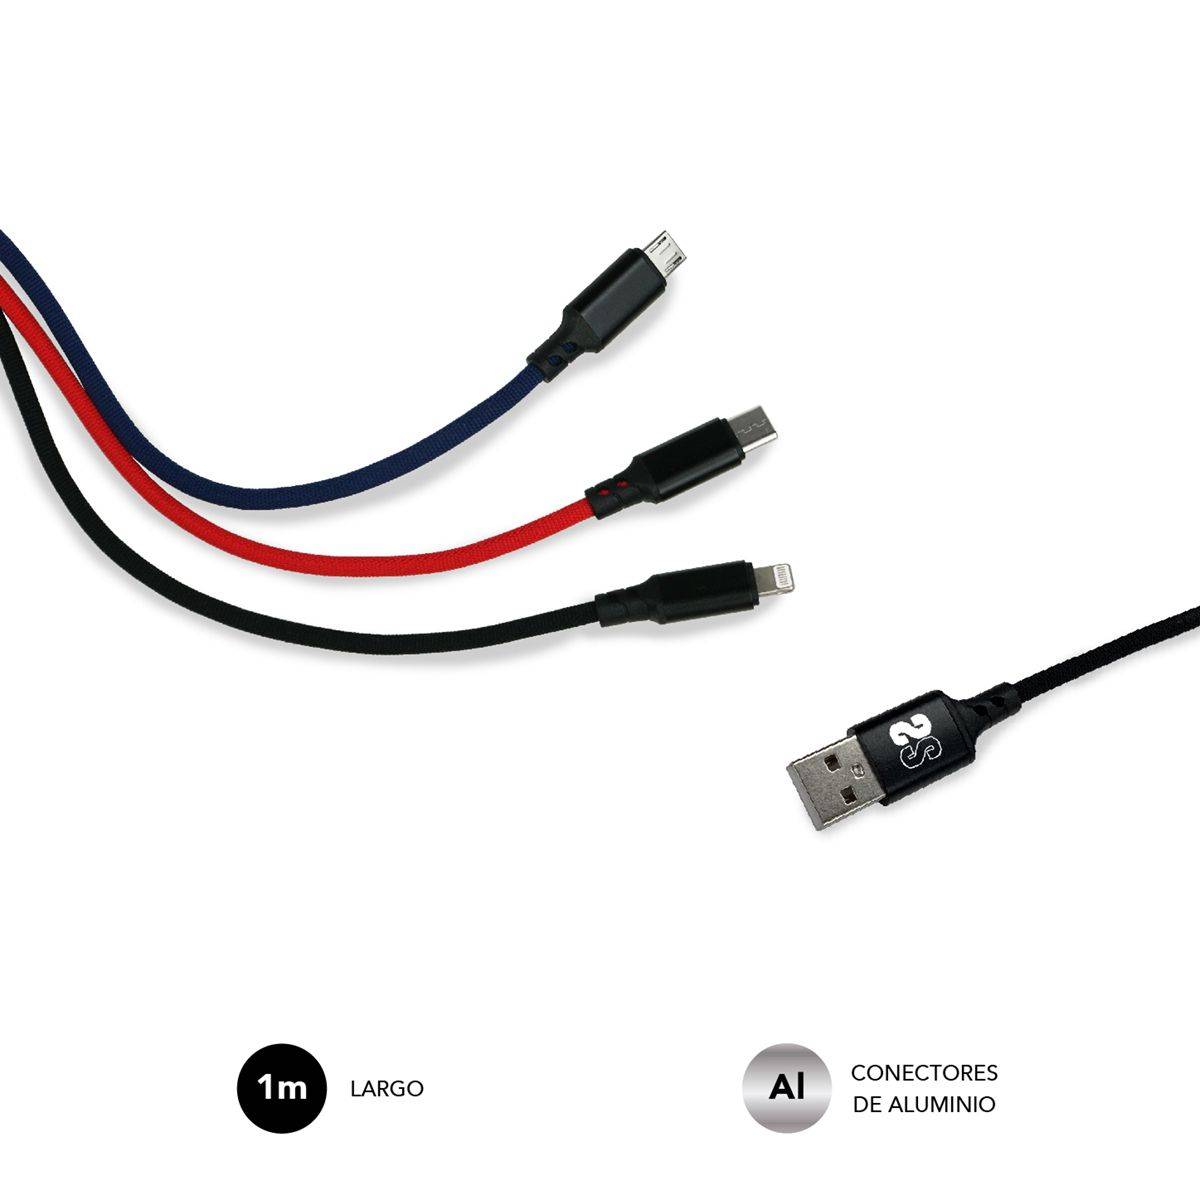 Câble de Charge Subblim 3 en 1 - Vitesse de Charge élevée - Compatible Android/Ios - Chargement simultané - Fibre de Nylon résistante - Tests de flexion 10 000 fois - Connecteurs en Aluminium - 1 m